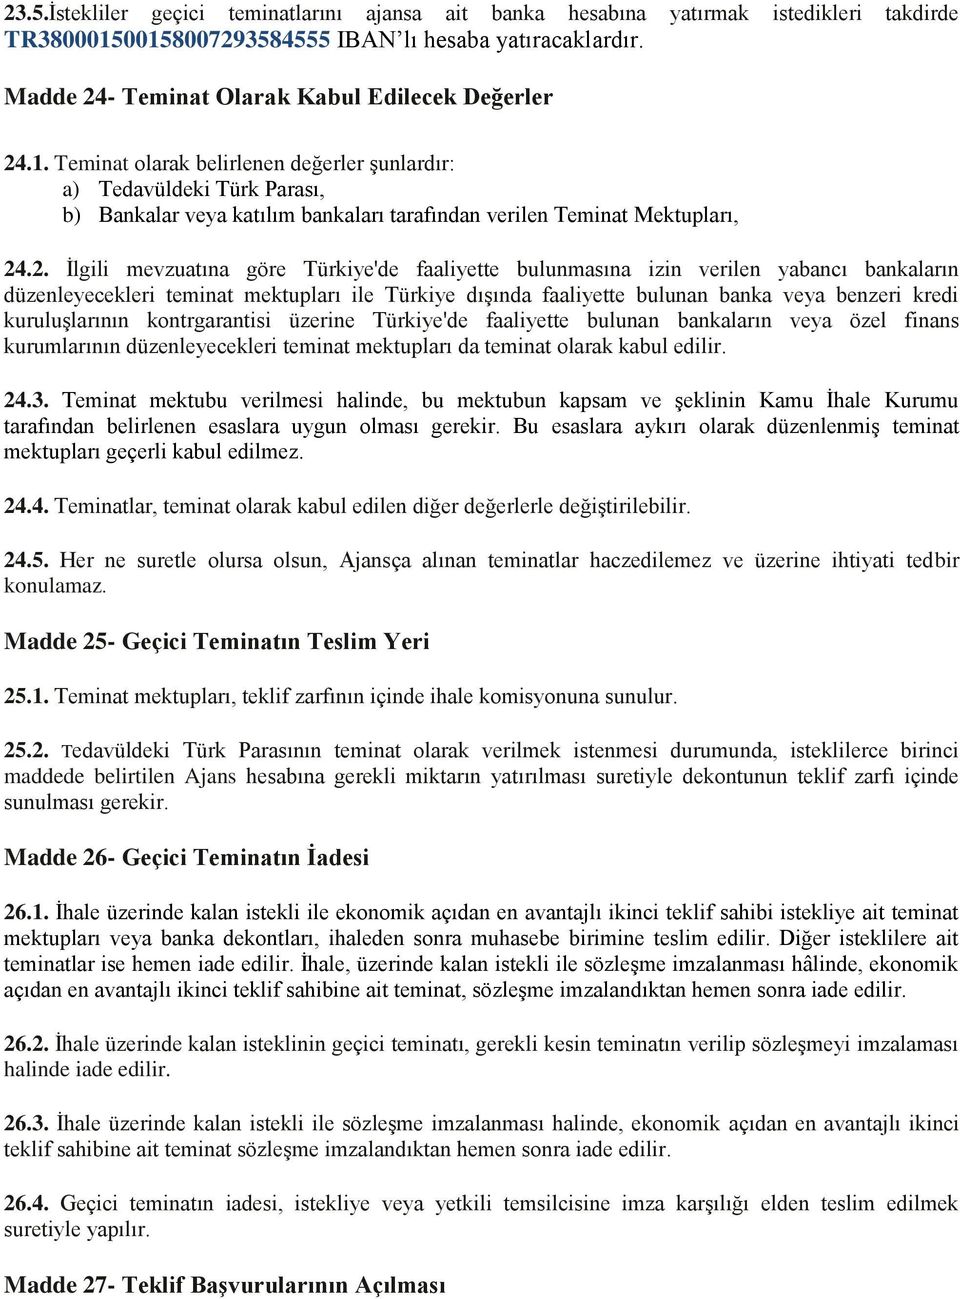 Teminat olarak belirlenen değerler şunlardır: a) Tedavüldeki Türk Parası, b) Bankalar veya katılım bankaları tarafından verilen Teminat Mektupları, 24